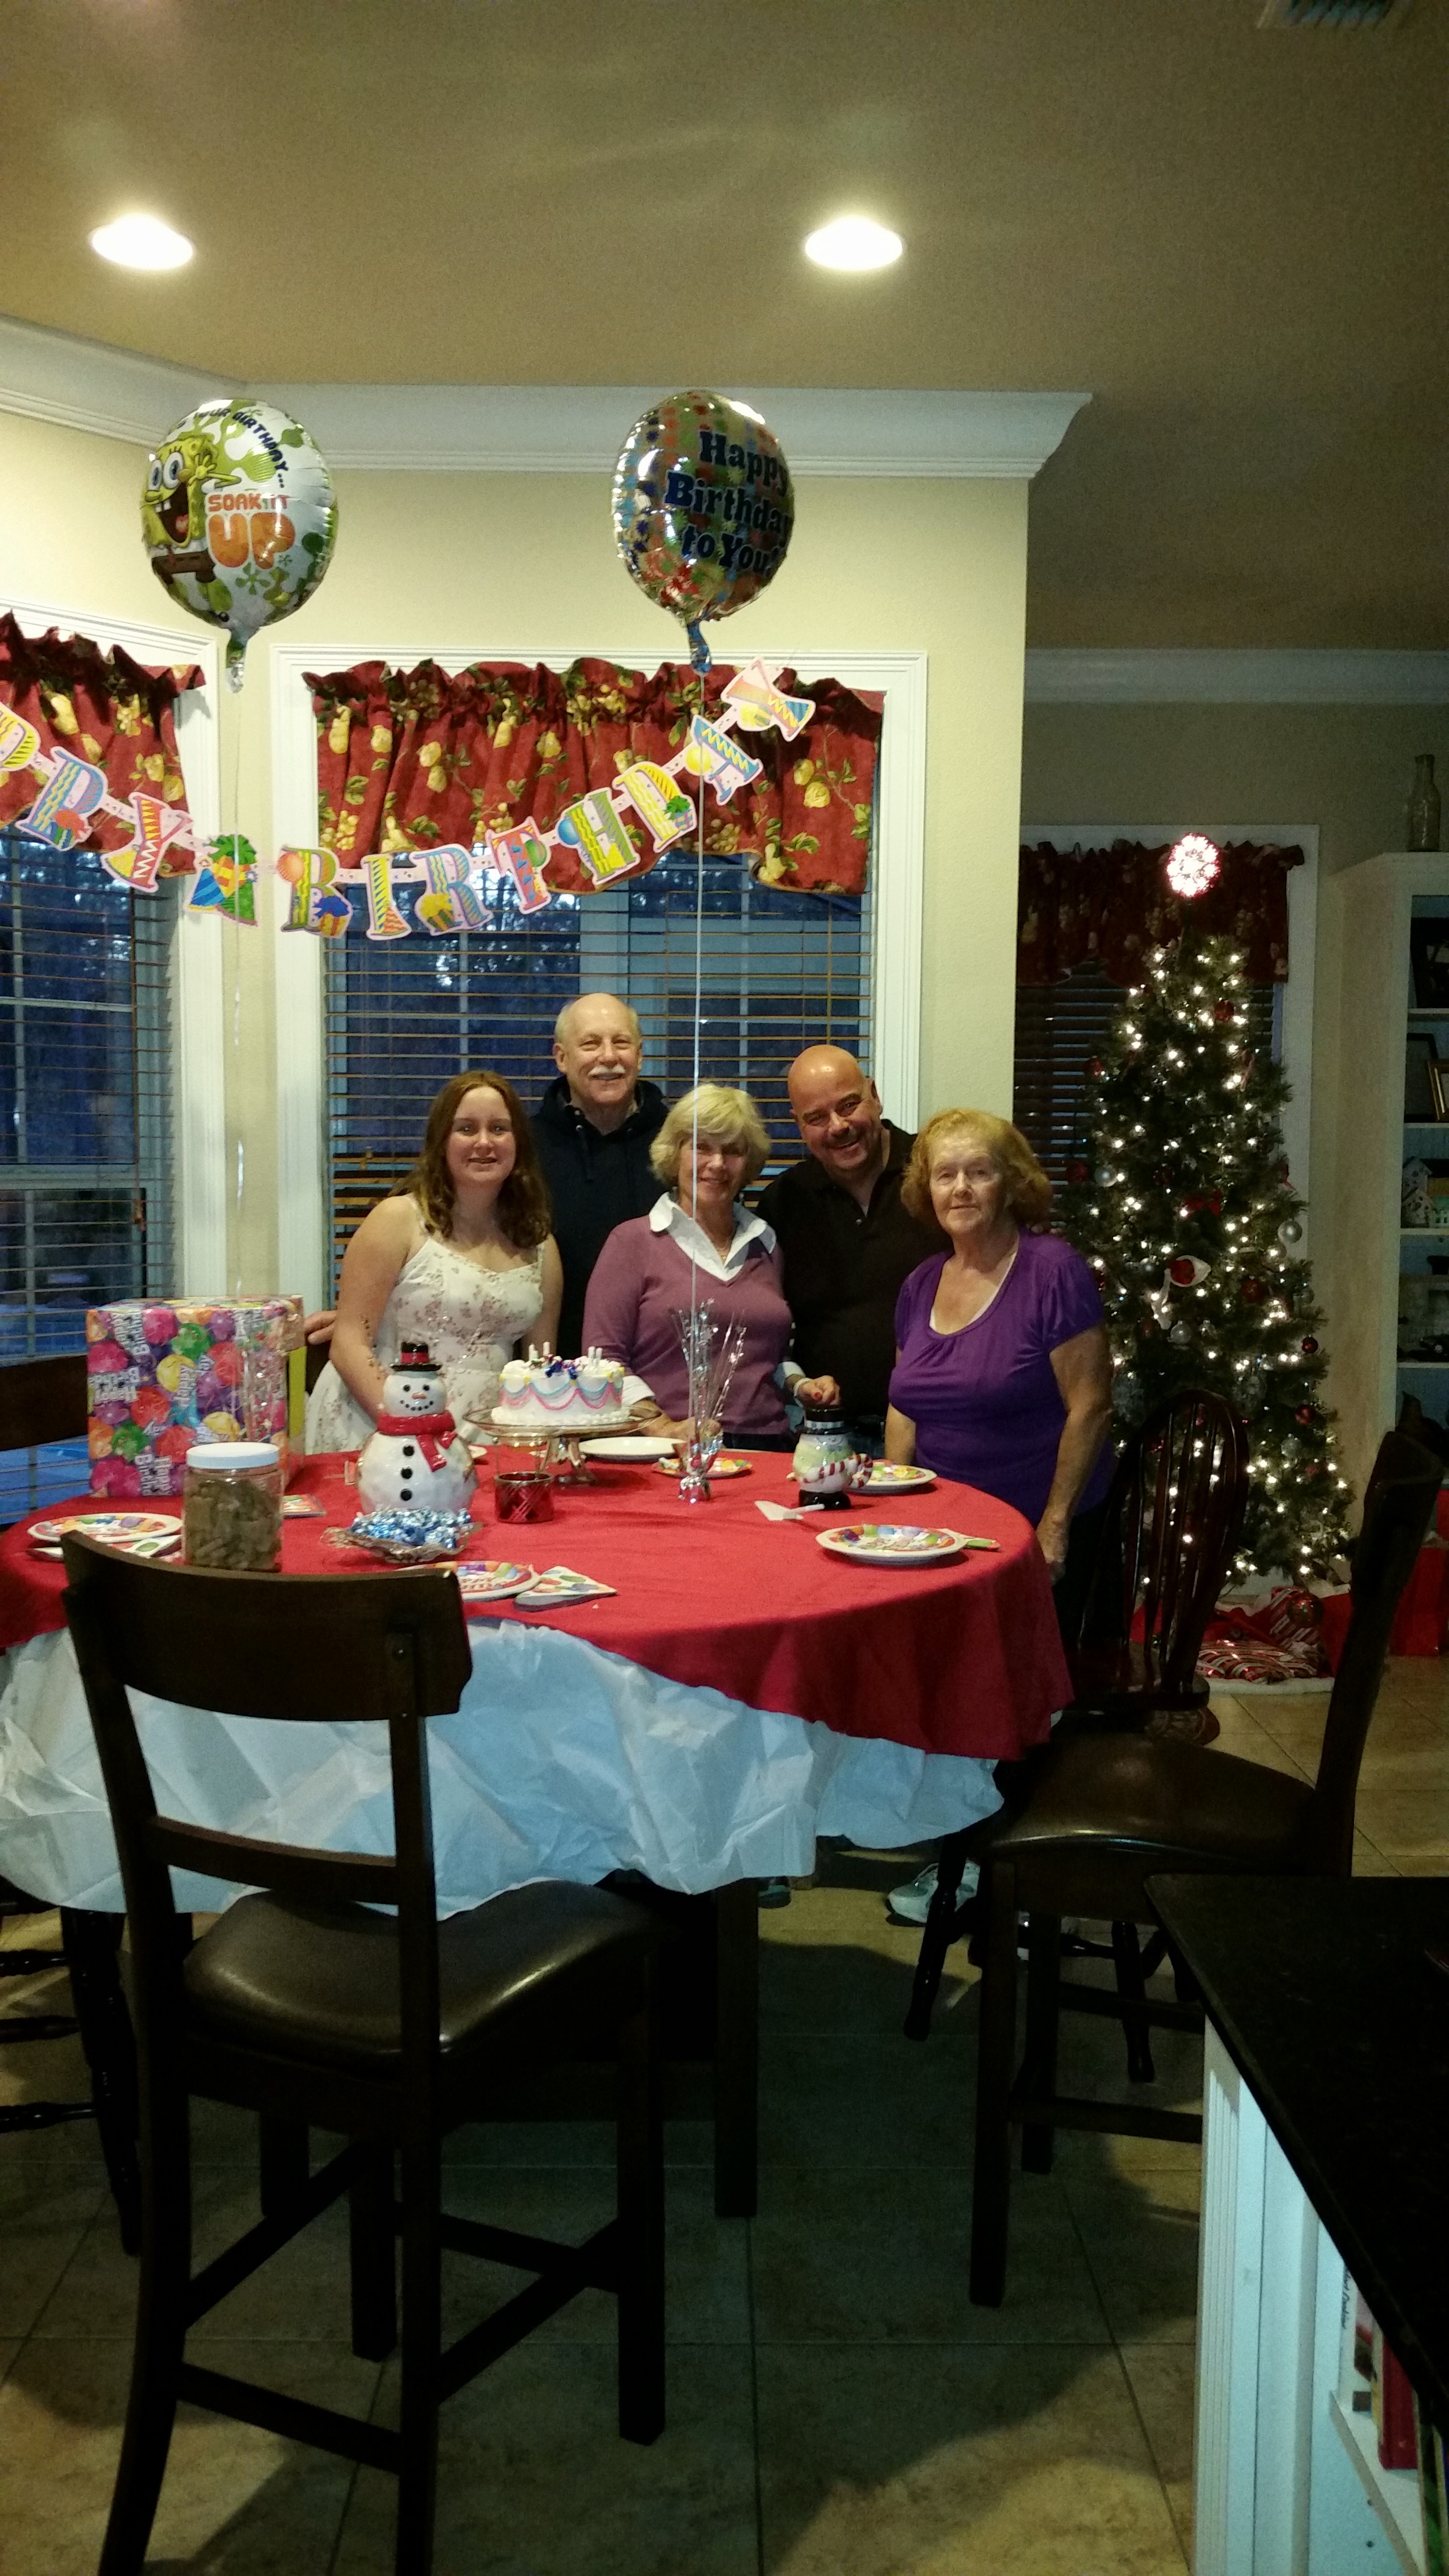 We were celebrating Carol Ann's lil sissy birthday Audrey, last year (12/14/2014).